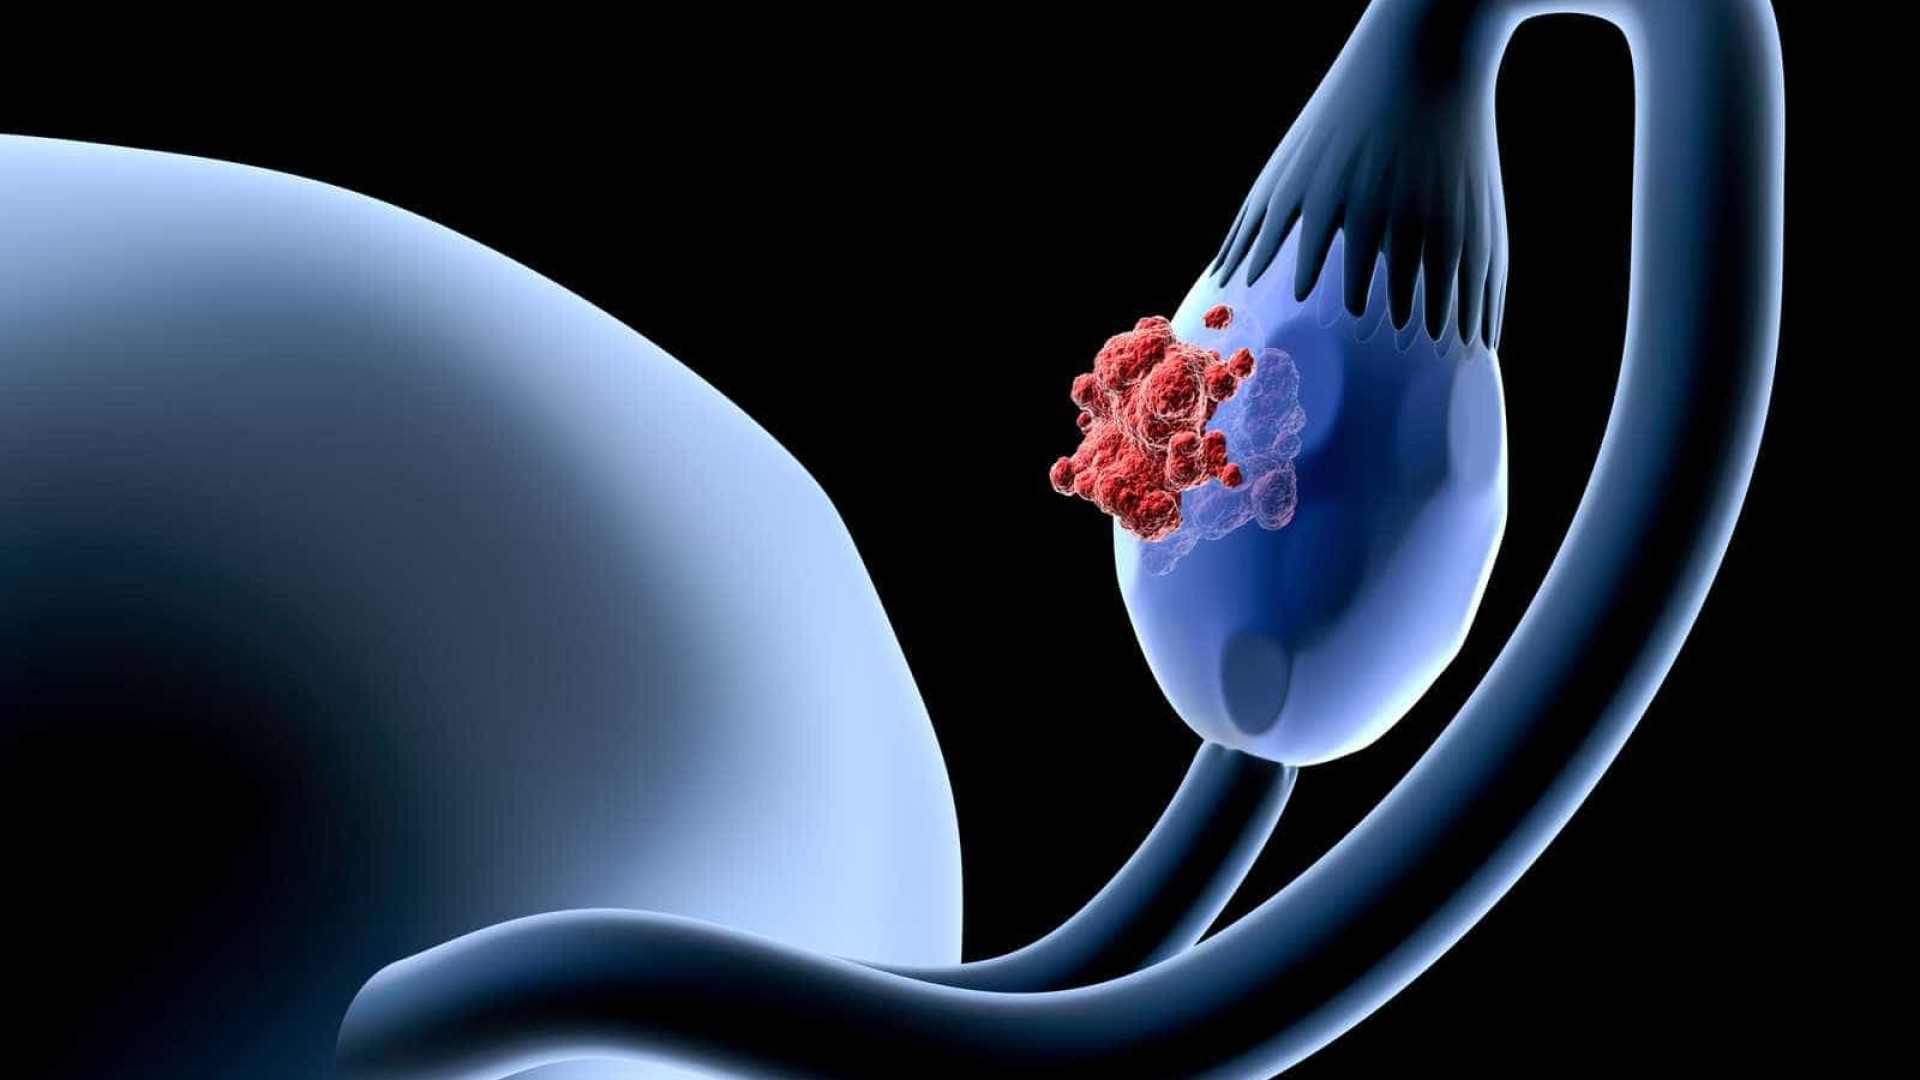 Saiba quais são os sintomas e tratamentos do câncer de ovário